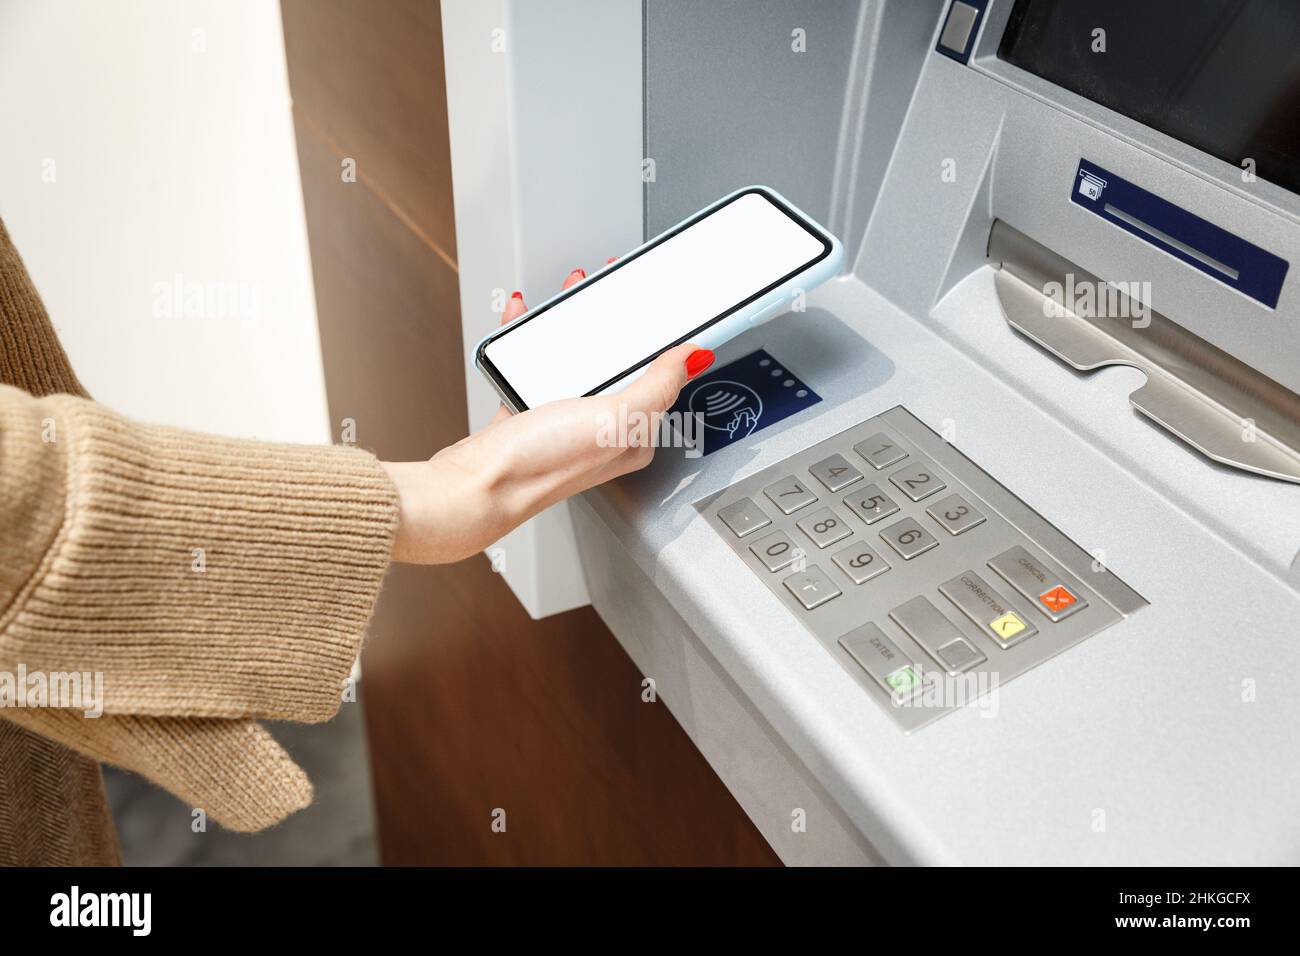 Weibliche Hand mit Mobiltelefon, das Geld vom geldautomaten abzieht, mit dem kontaktlosen NFC-wi-Fi-Bezahlsystem. Drahtlose Authentifizierung und Datenübertragung Stockfoto